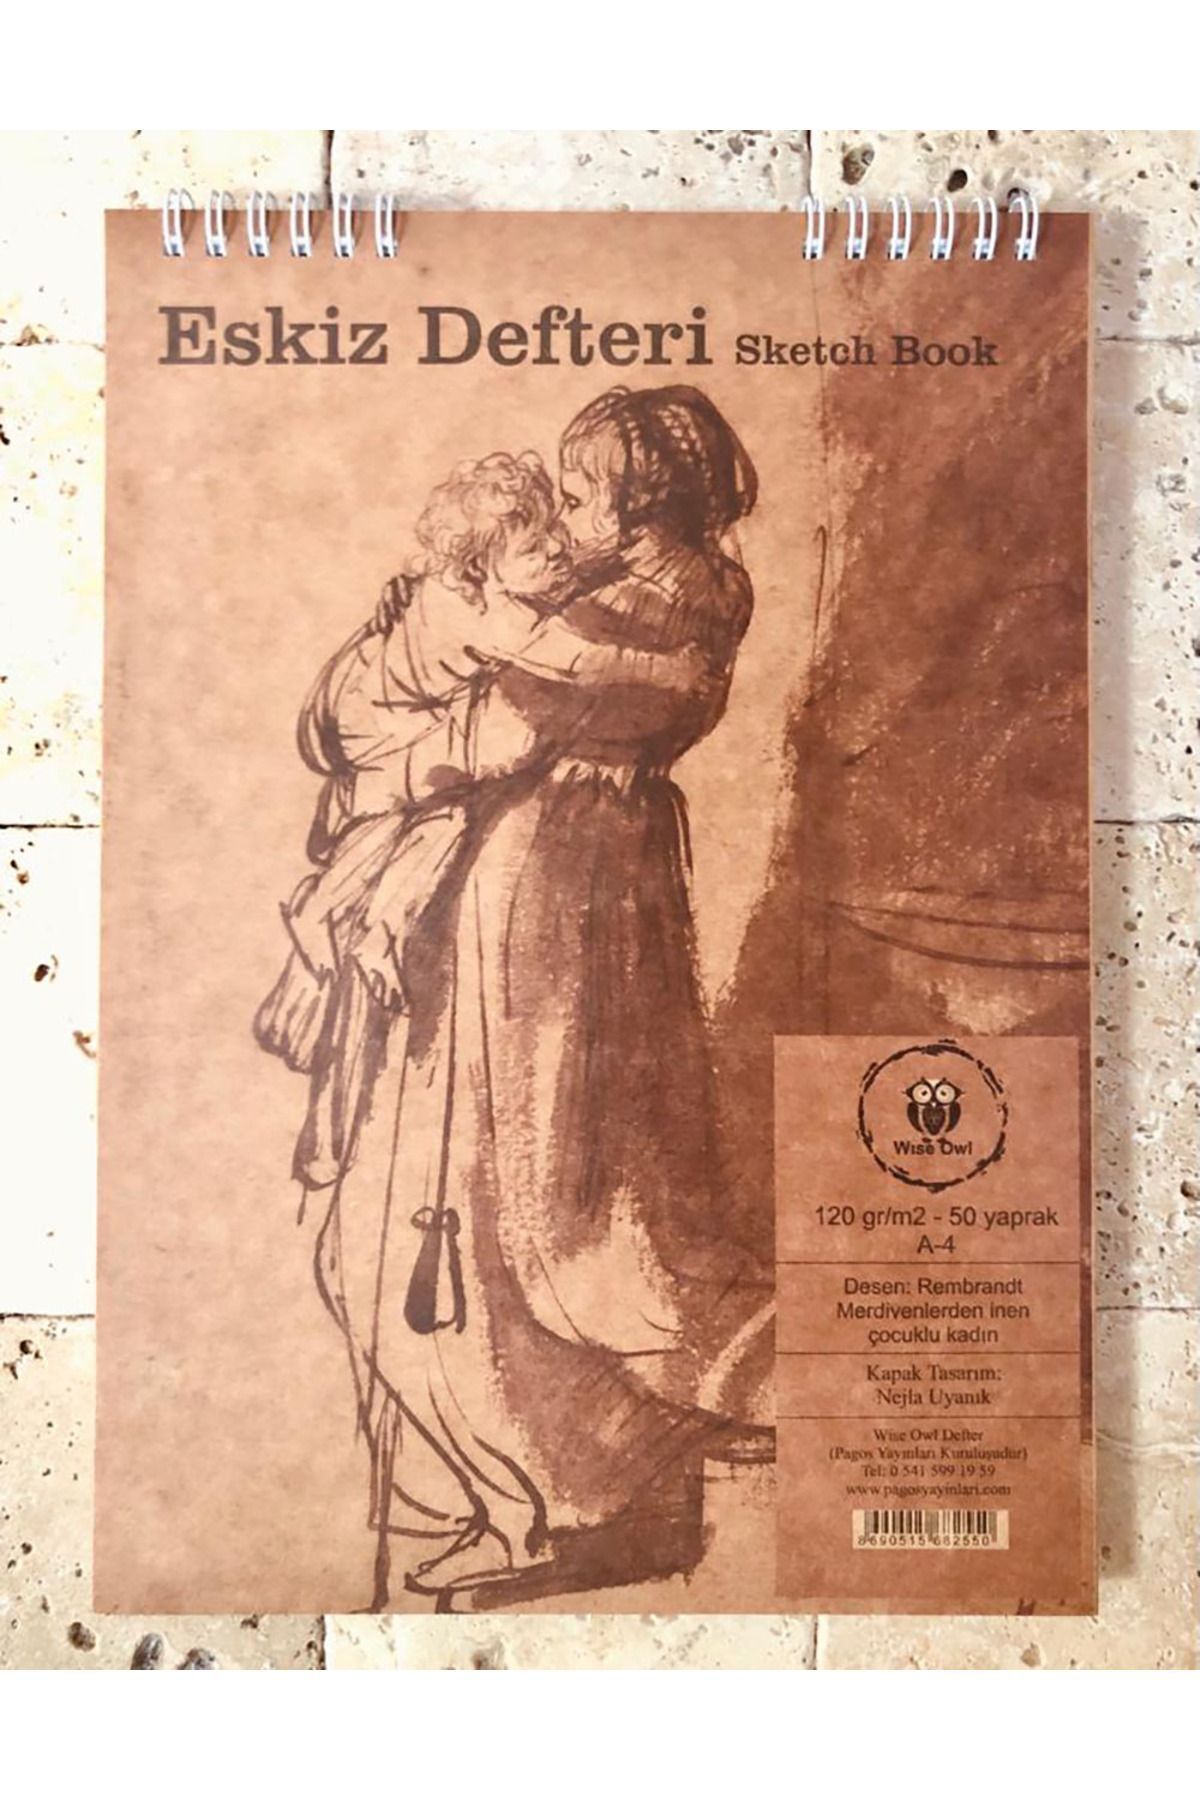 Pagos Yayınları A4/50yp/120gr. Eskiz Defteri Sketch Book